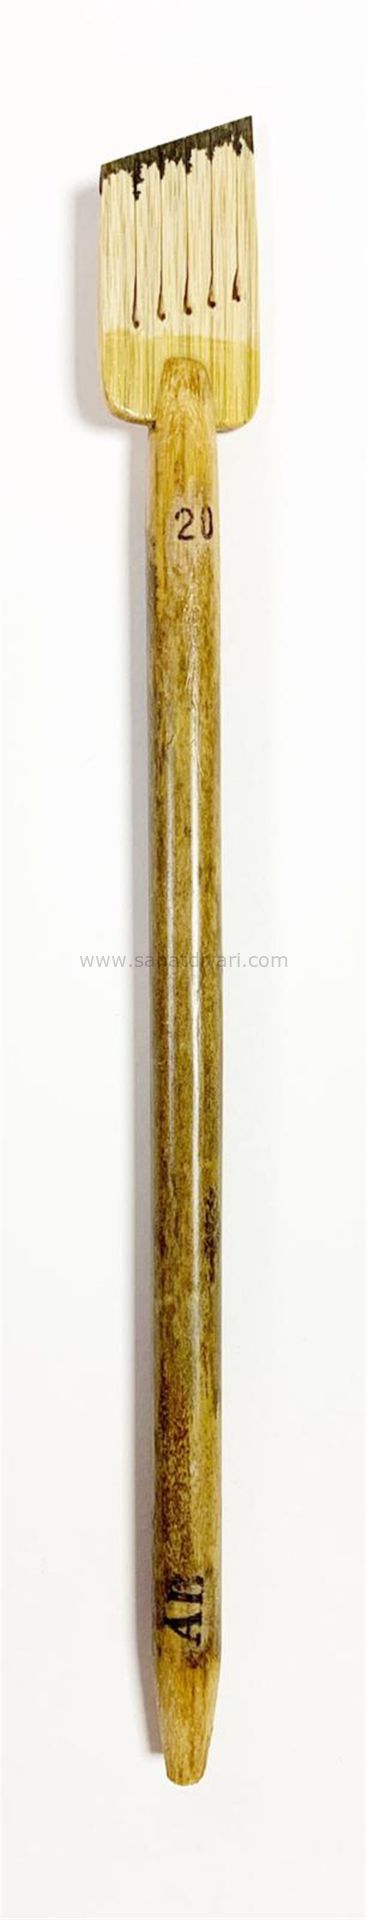 Tiryakiart Şaklı Bambu Kalem 20 mm